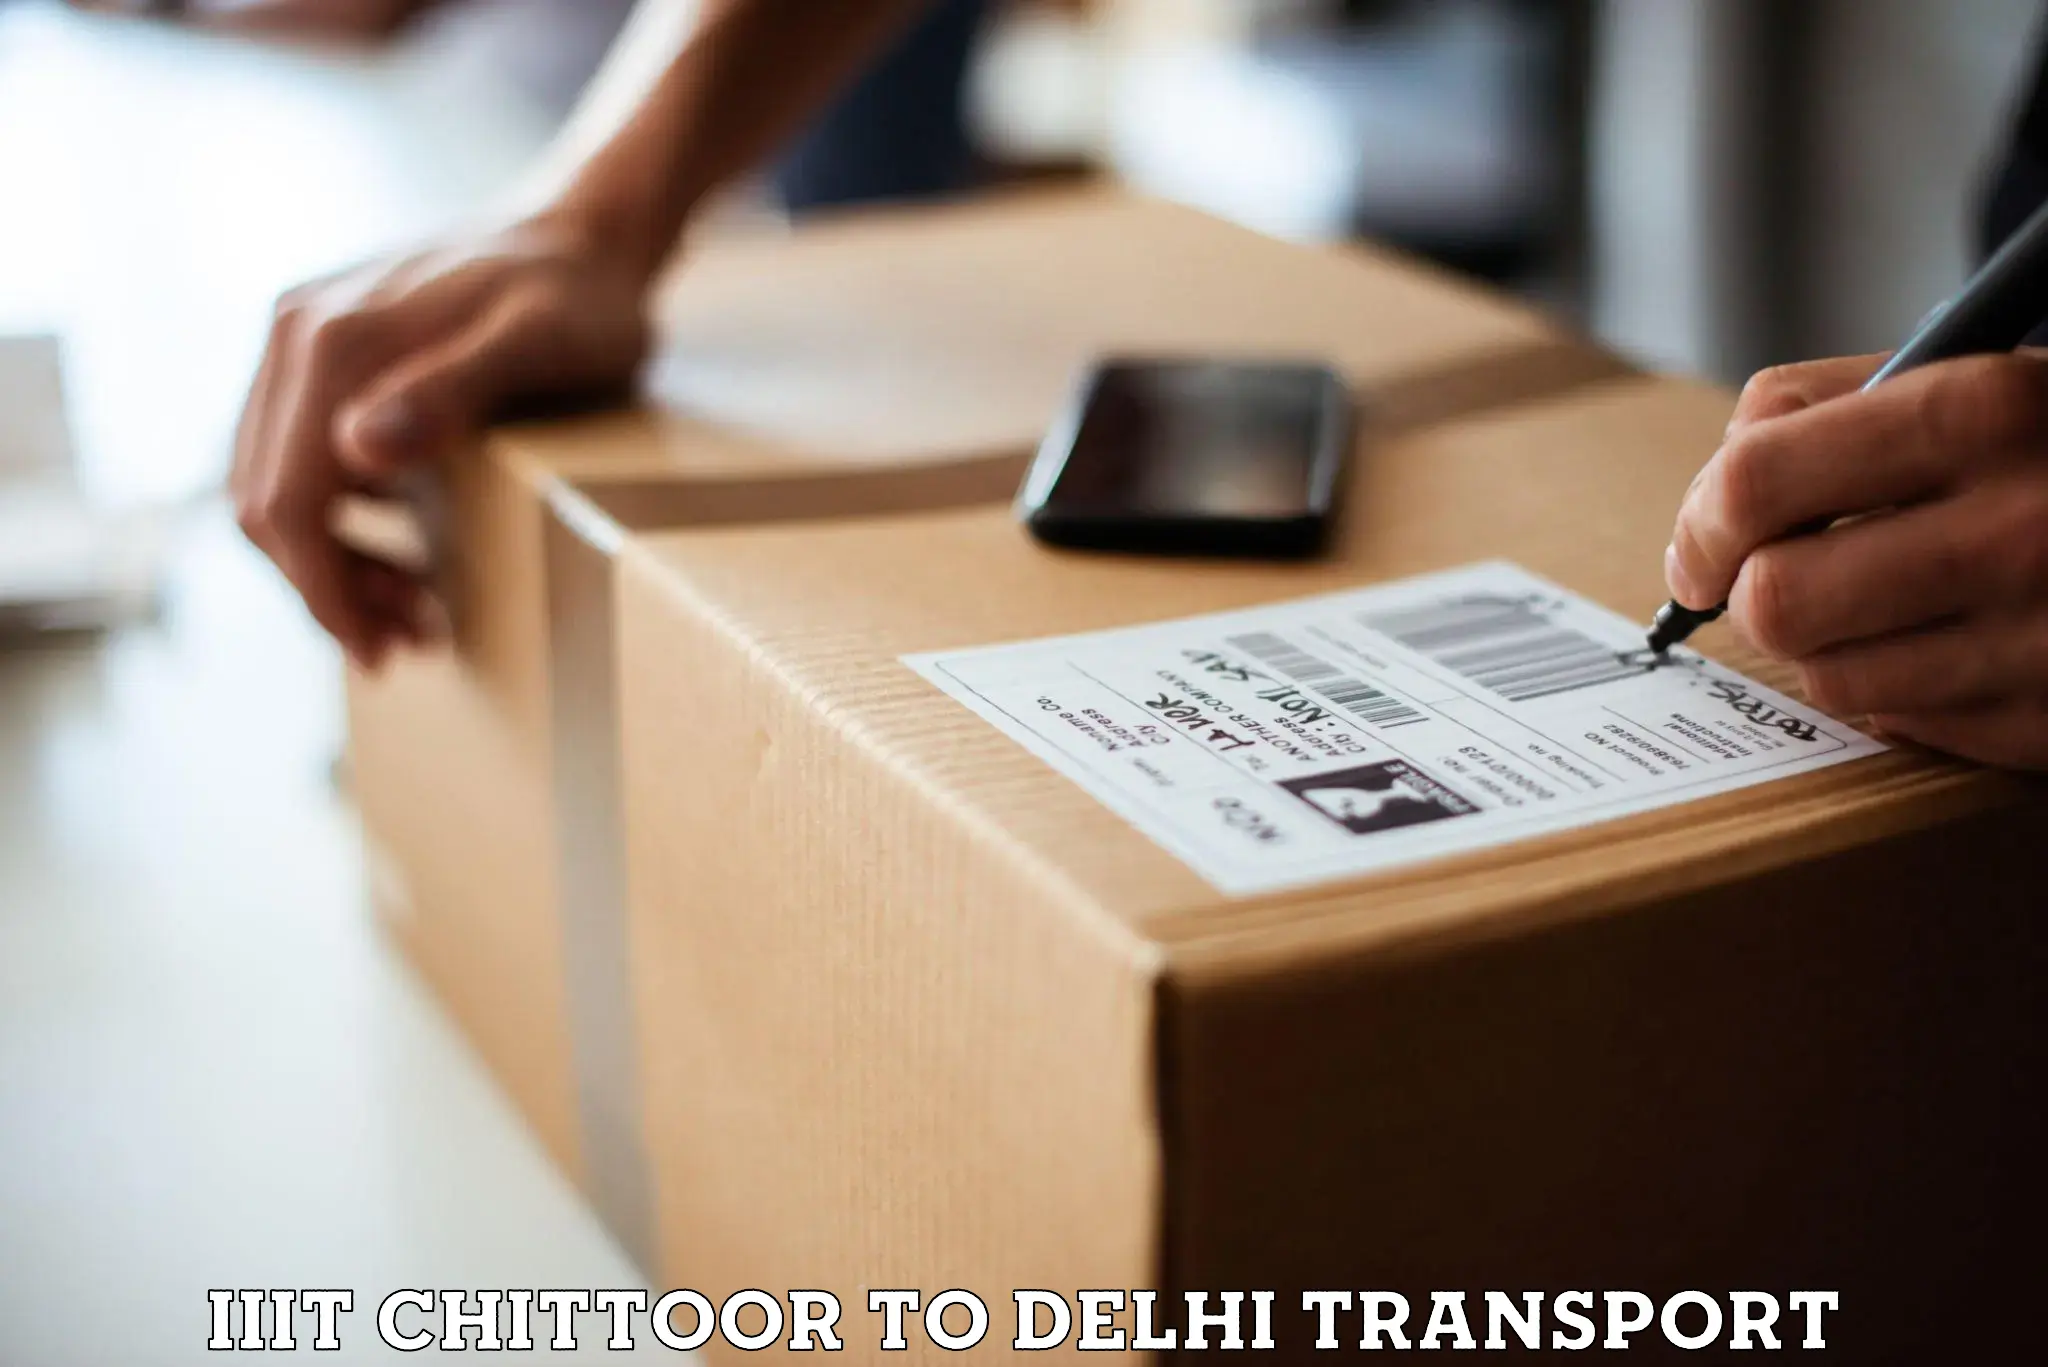 Road transport online services in IIIT Chittoor to University of Delhi